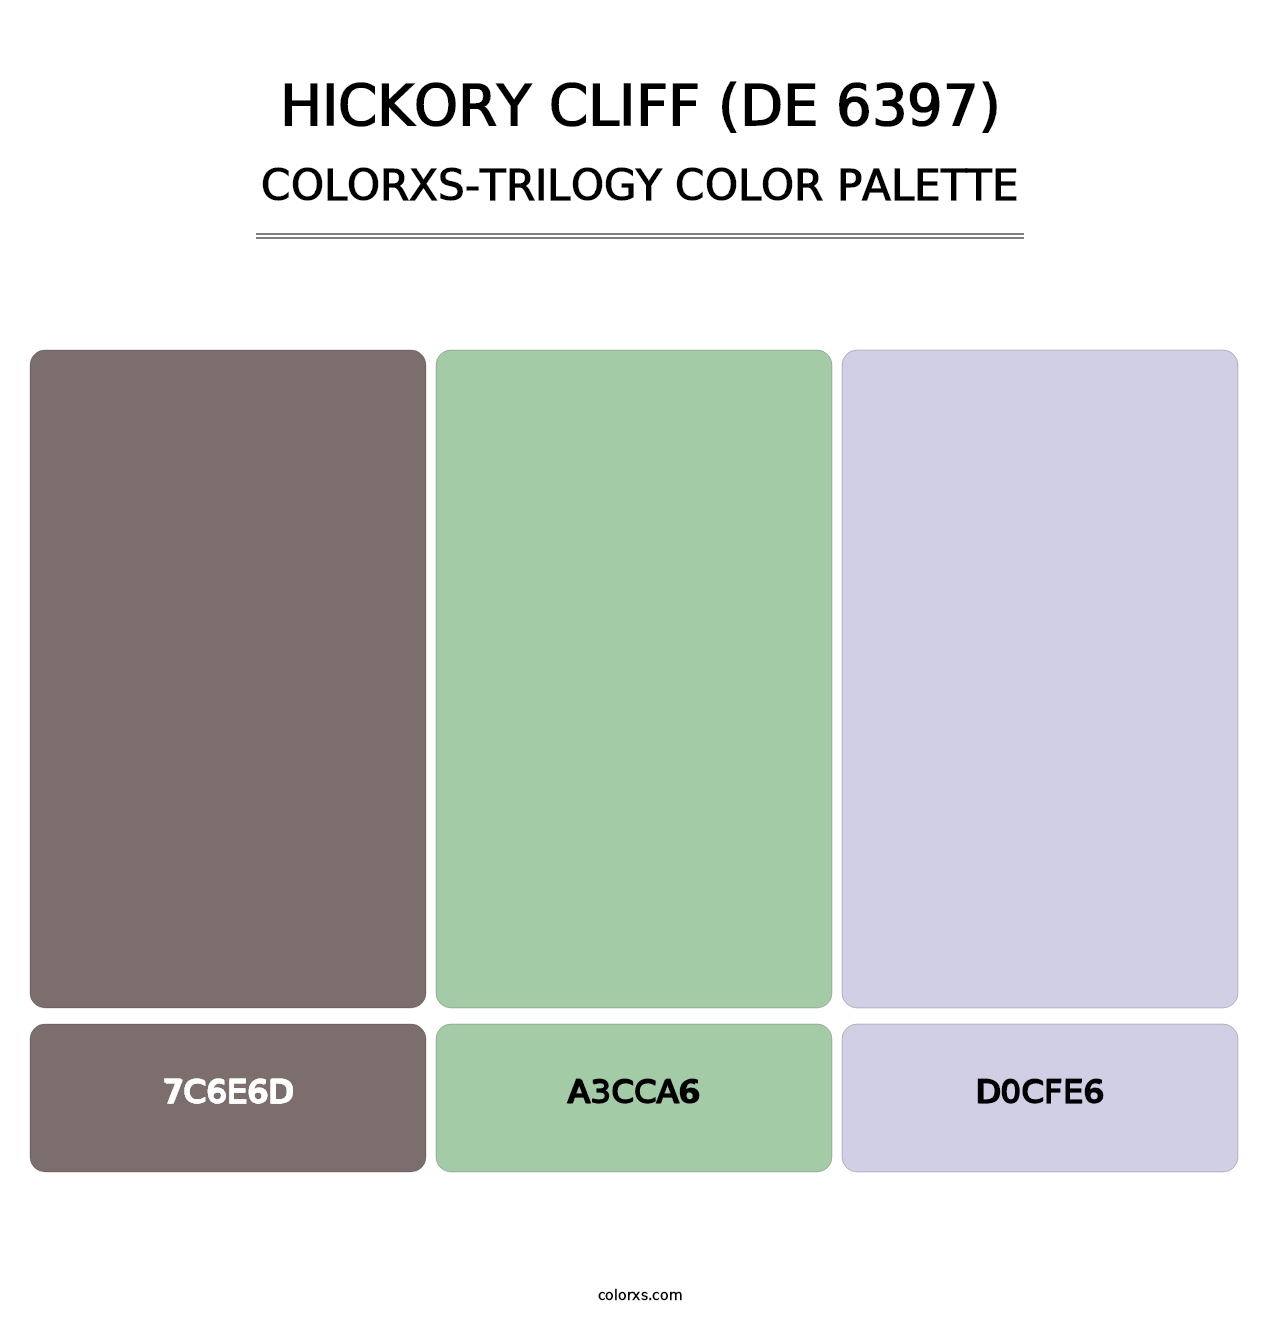 Hickory Cliff (DE 6397) - Colorxs Trilogy Palette